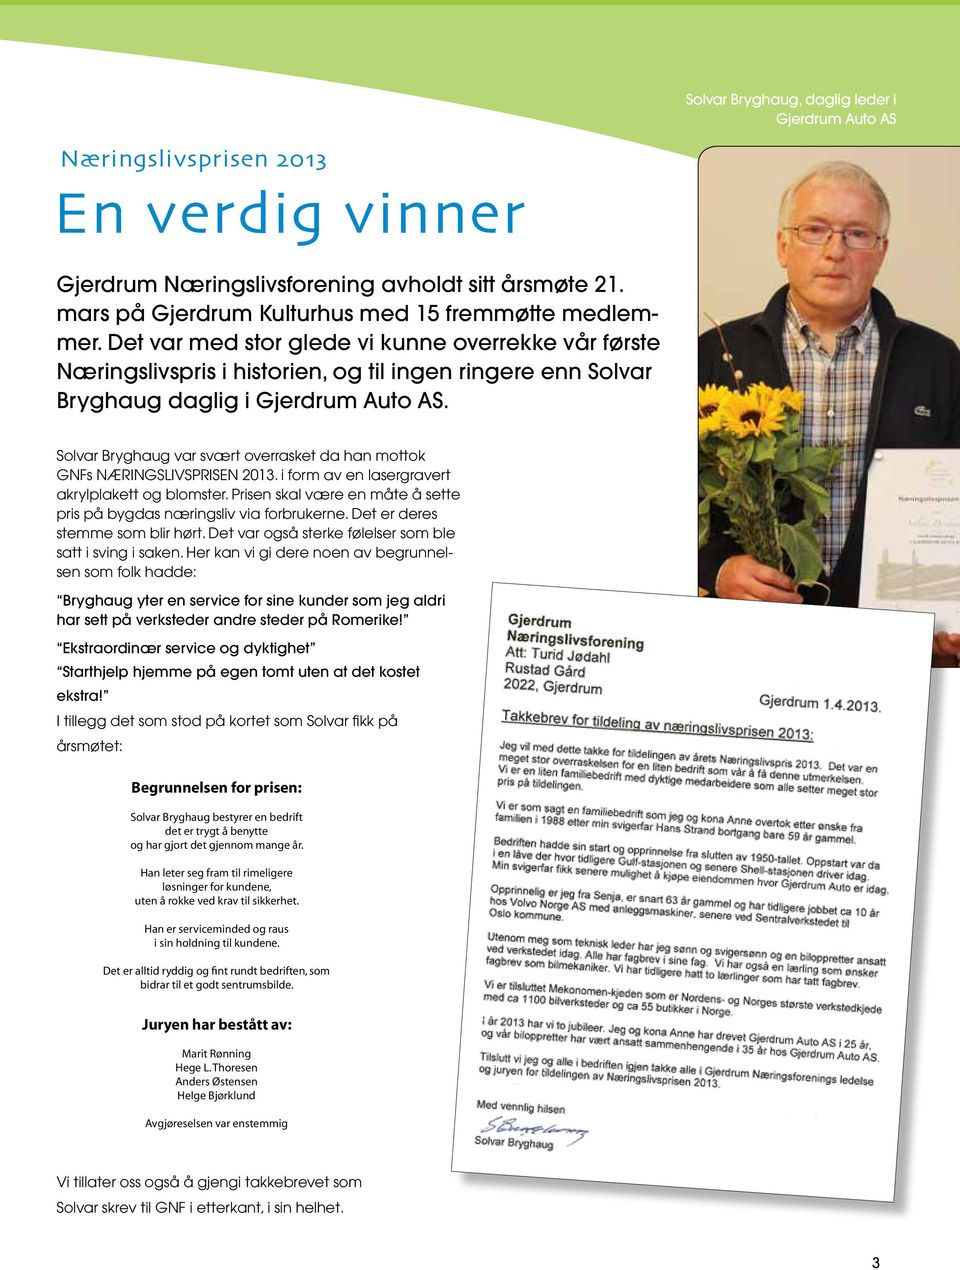 Solvar Bryghaug var svært overrasket da han mottok GNFs NÆRINGSLIVSPRISEN 2013. i form av en lasergravert akrylplakett og blomster.